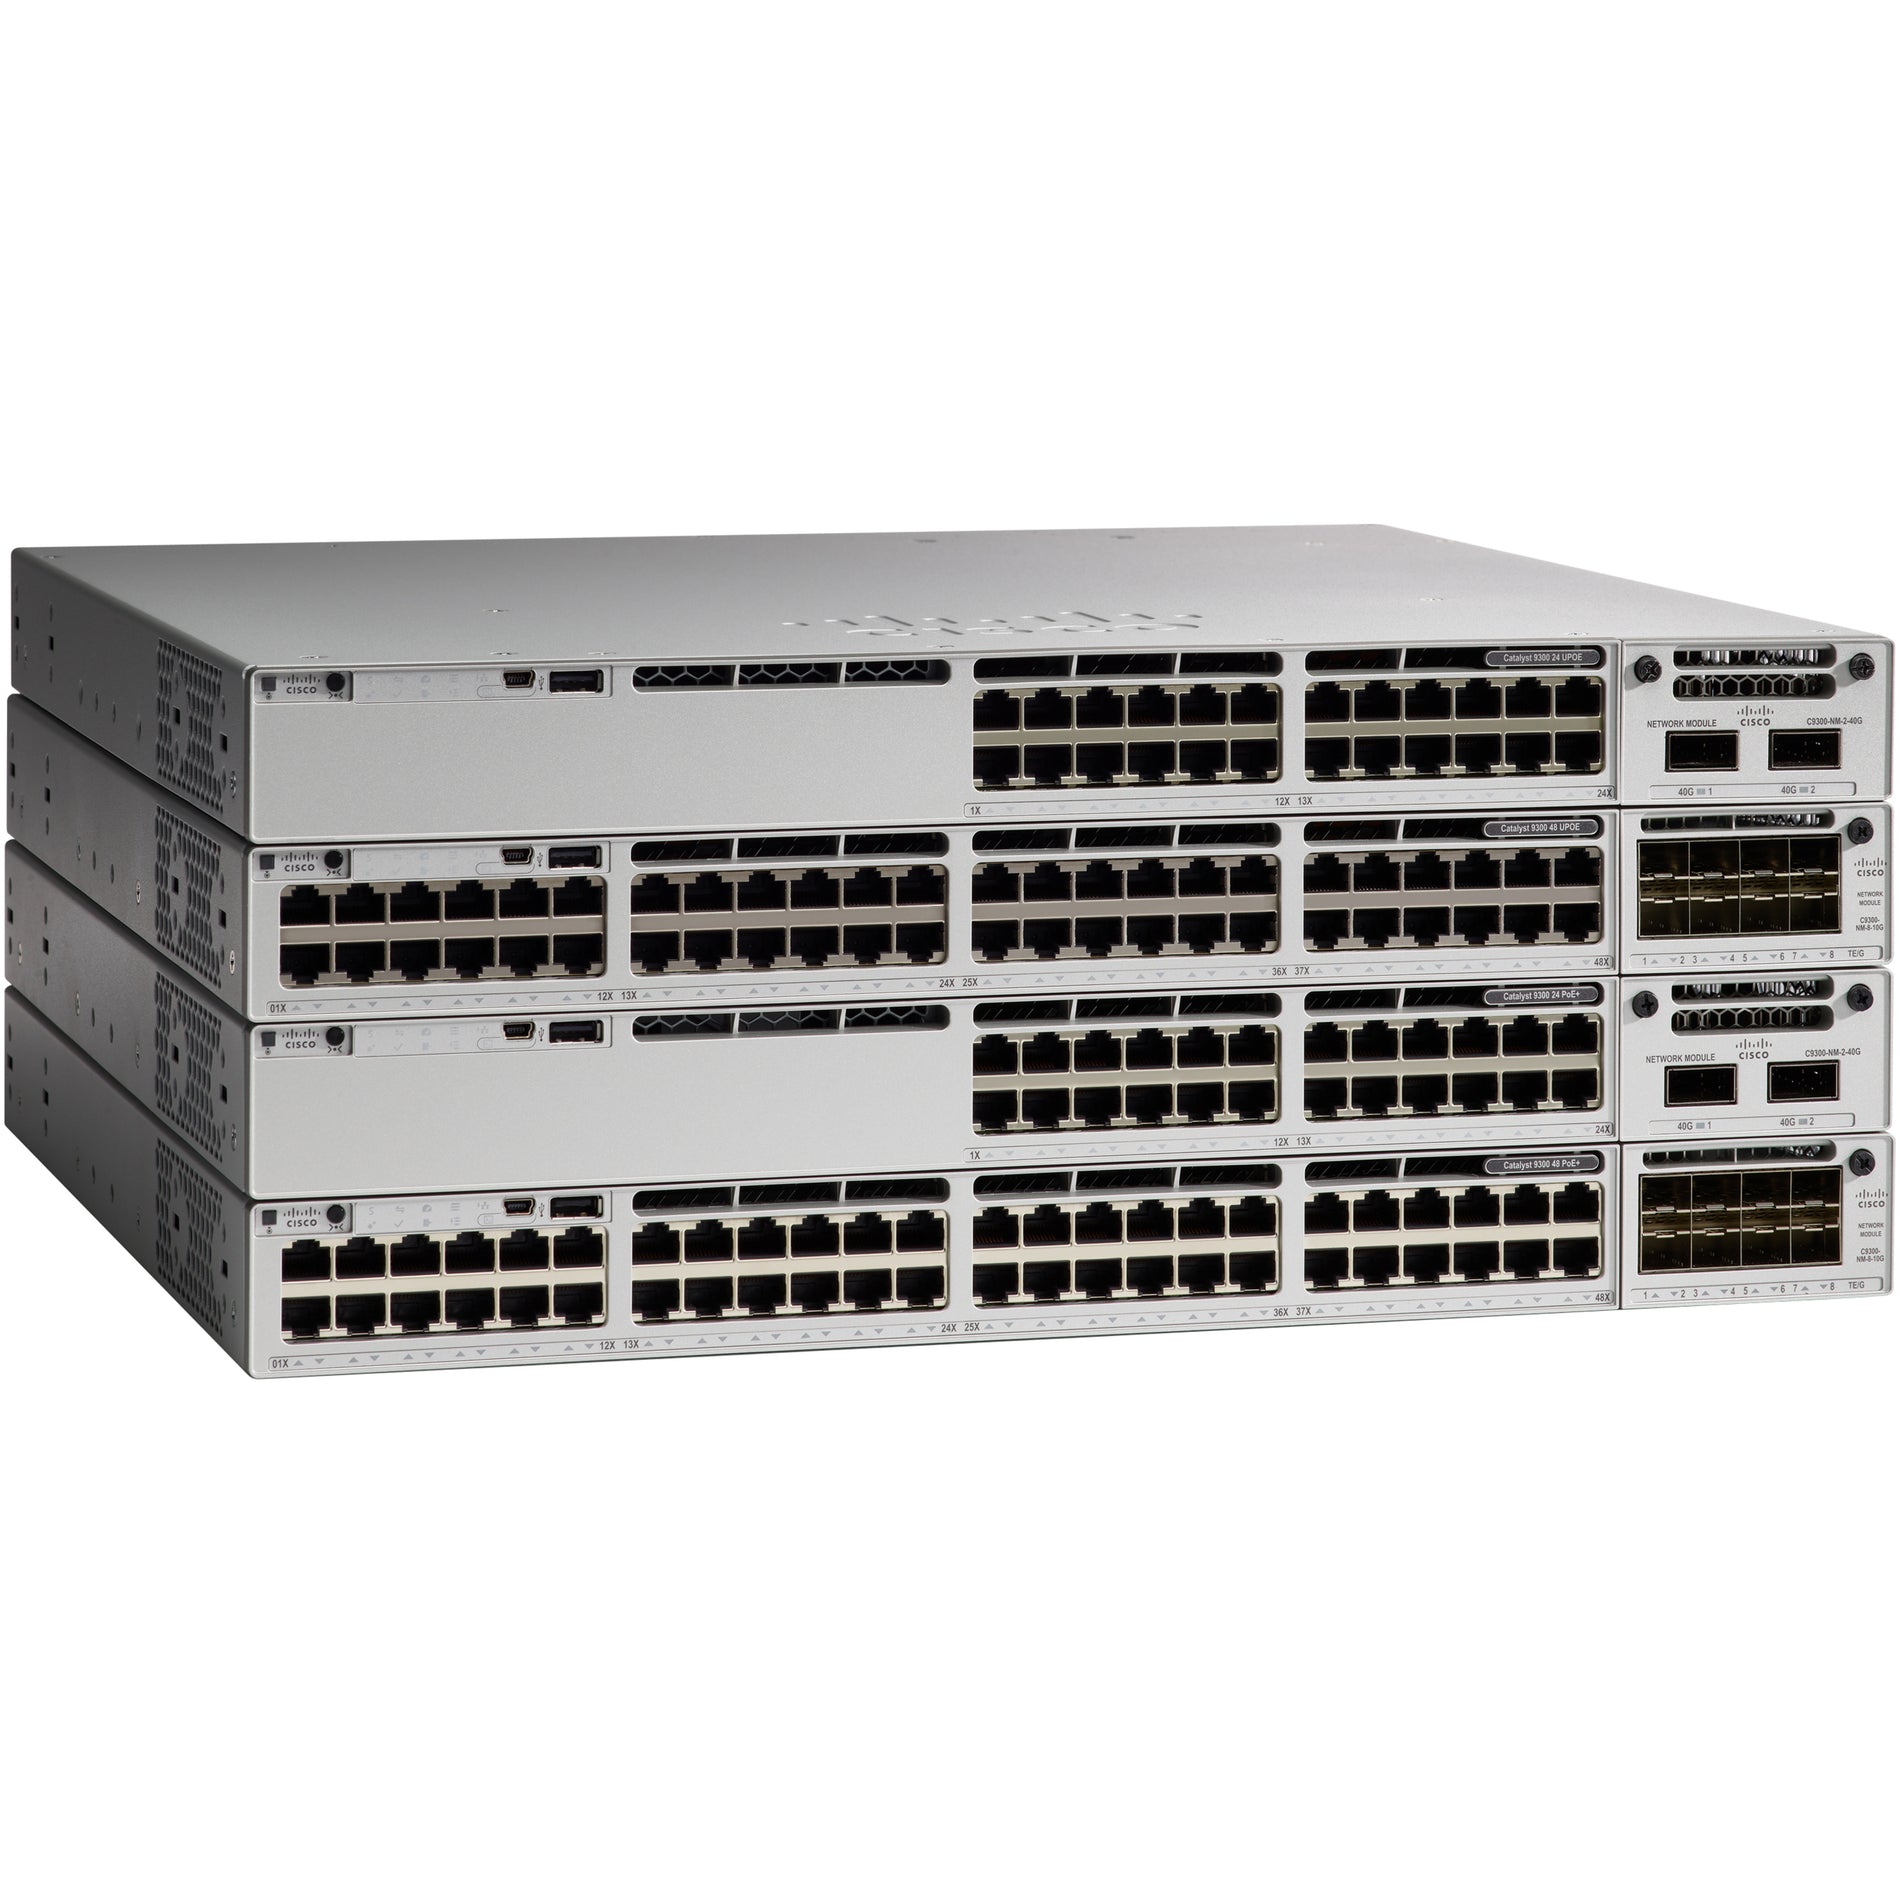 Cisco C9300-24UX-E Catalyst C9300-24UX Ethernet Switch 24 x Gigabit Ethernet Network Manageable Cisco C9300-24UX-E Catalyst C9300-24UX Ethernet Switch 24 x Gigabit Ethernet Network Manageable